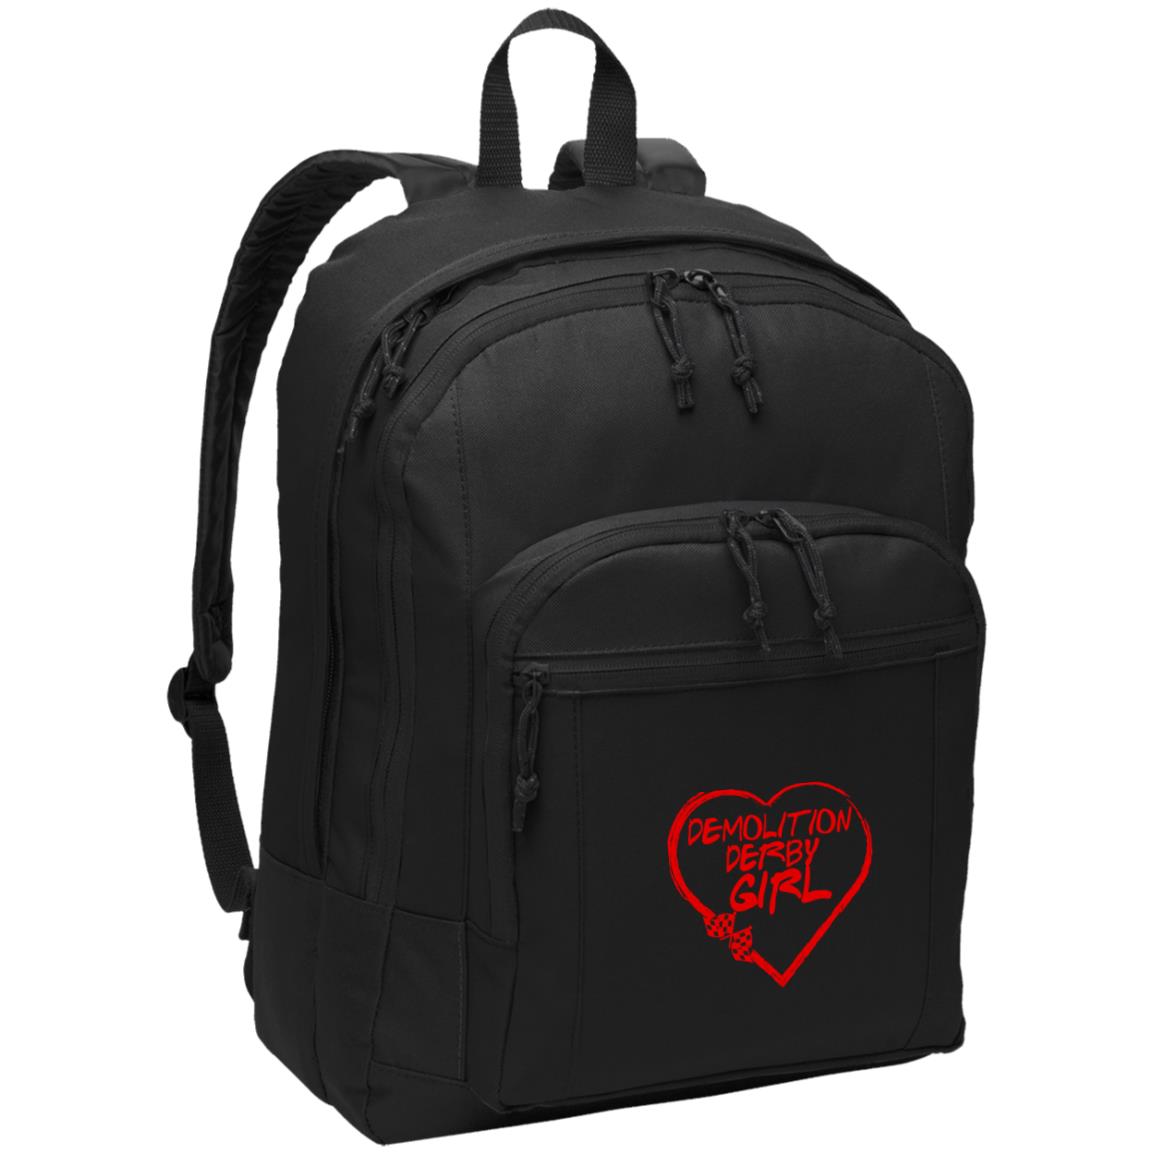 Demolition Derby Girl Heart Basic Backpack